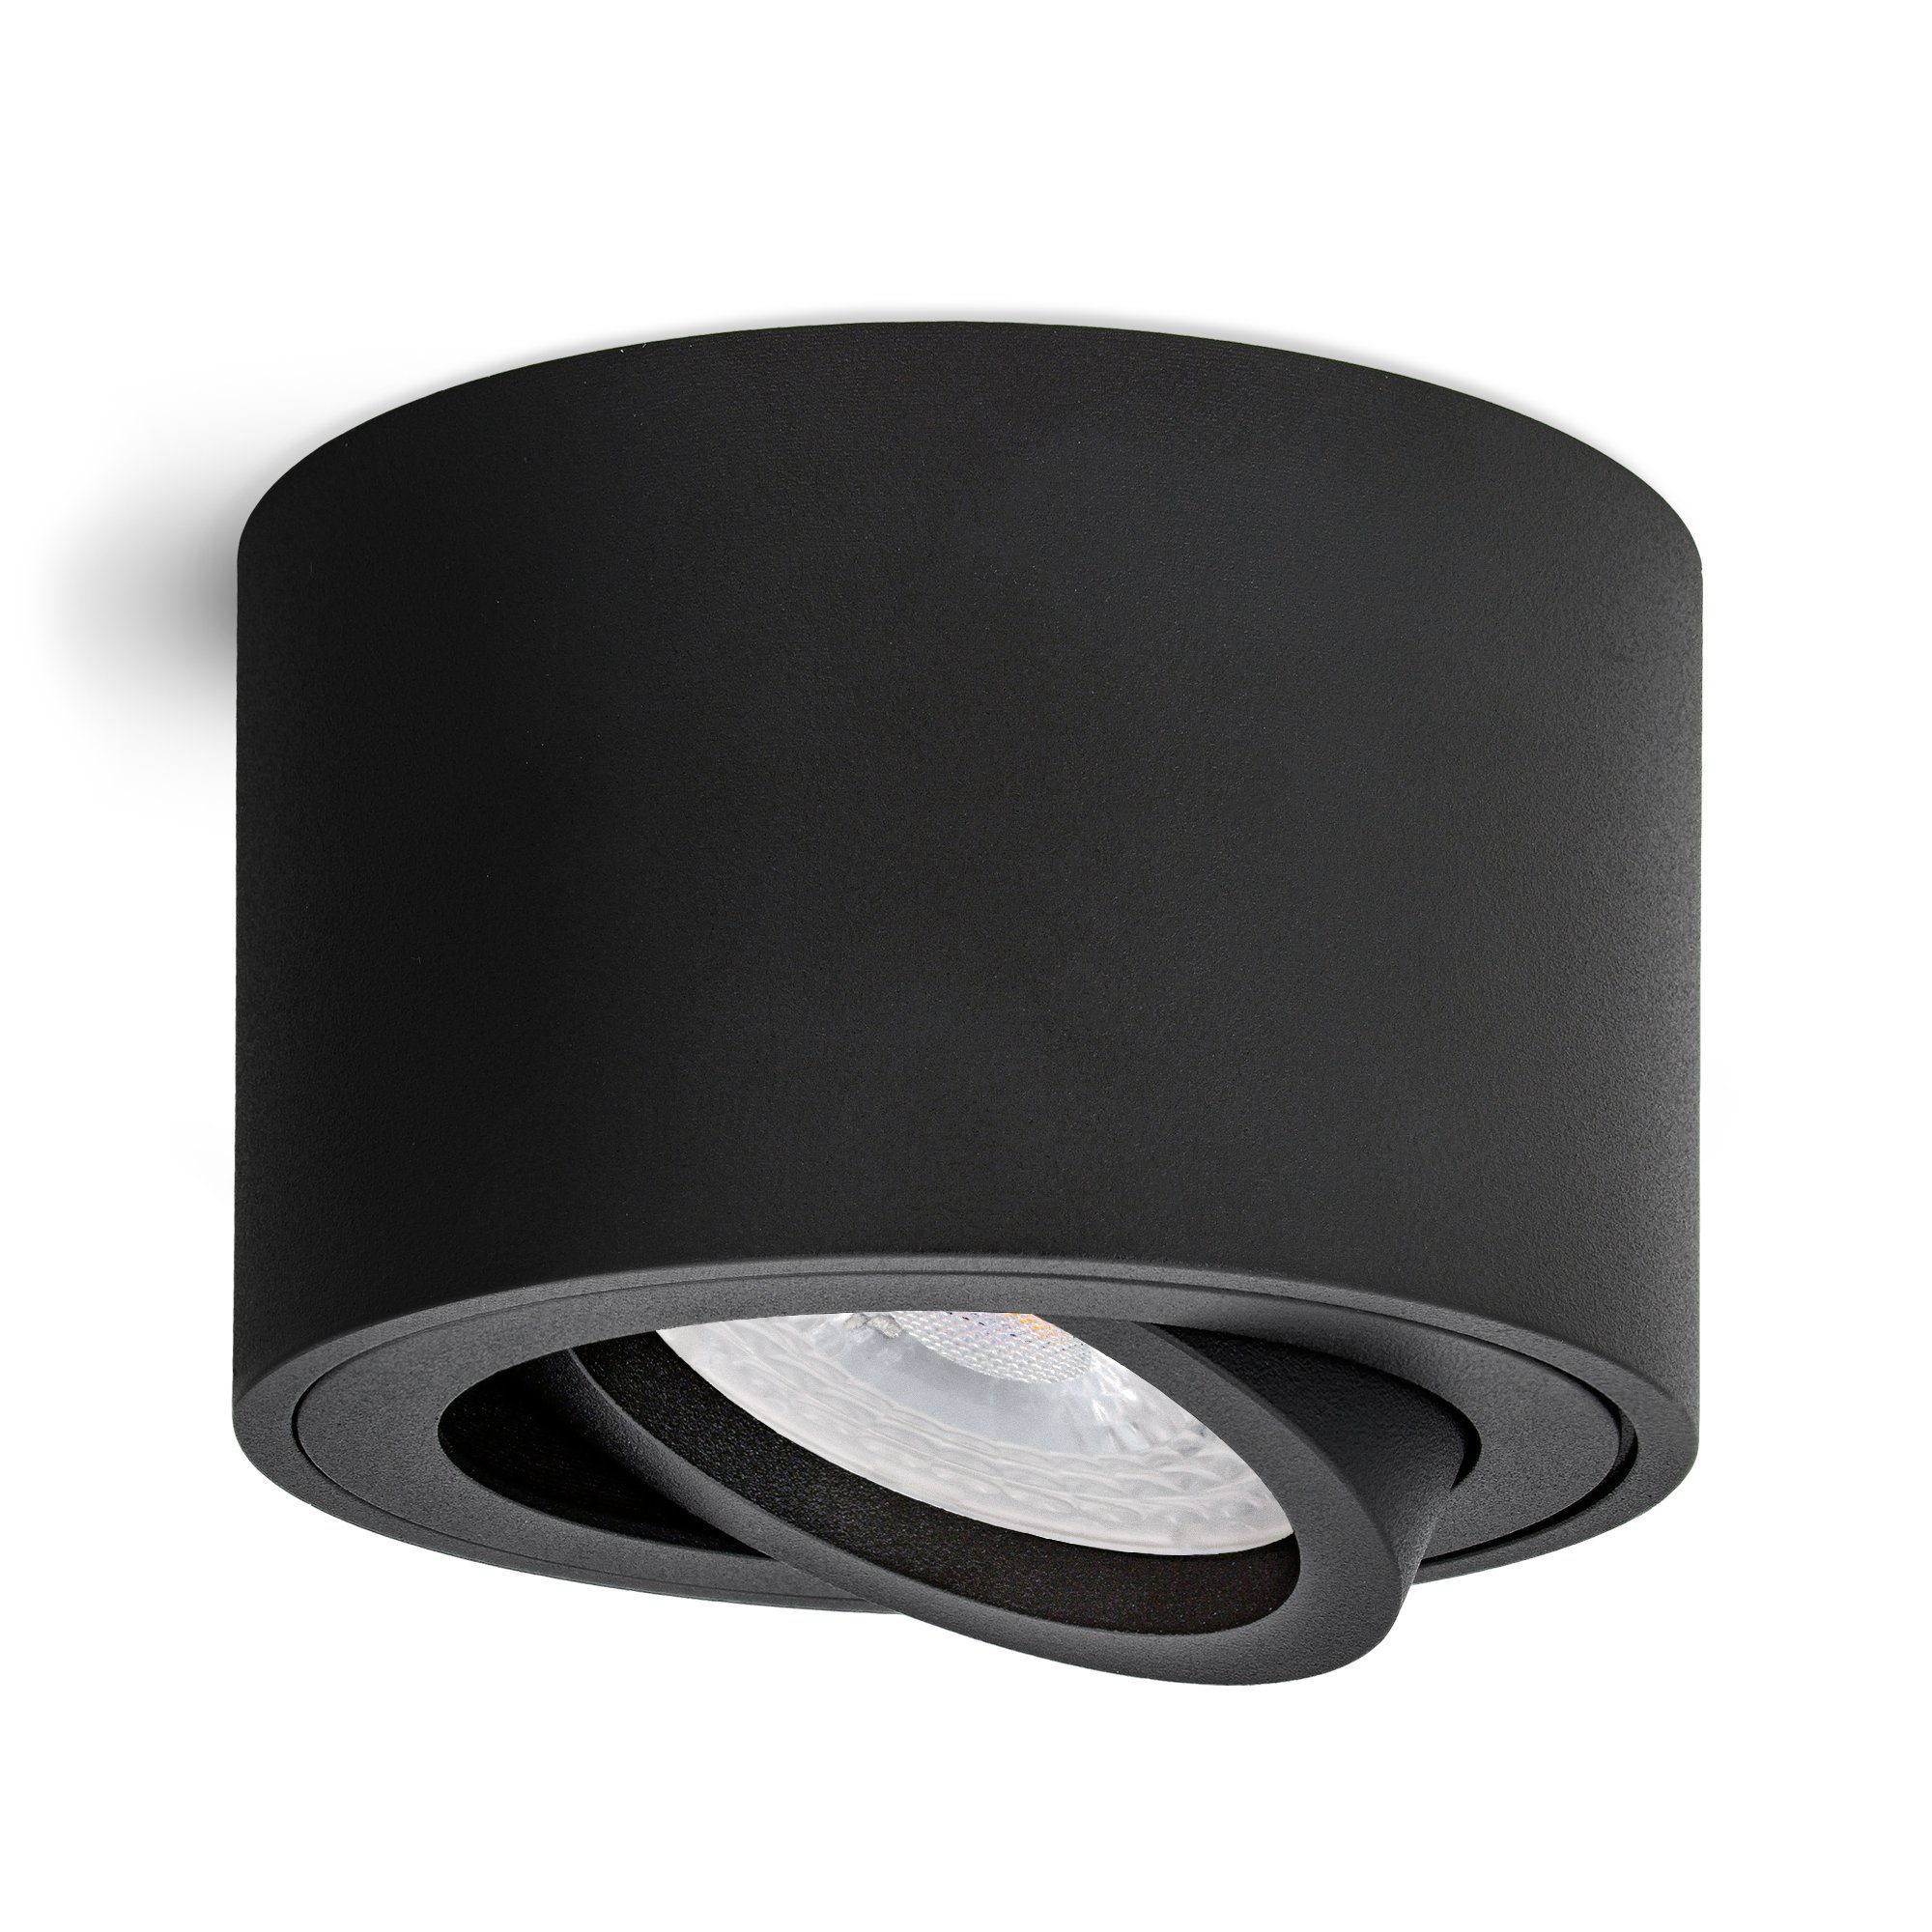 Aufbaustrahler LED, mit Leuchtmittel rund linovum matt SMOL & inklusive, LED schwarz in Aufbauleuchte 6 schwenkbar x Leuchtmittel inklusive